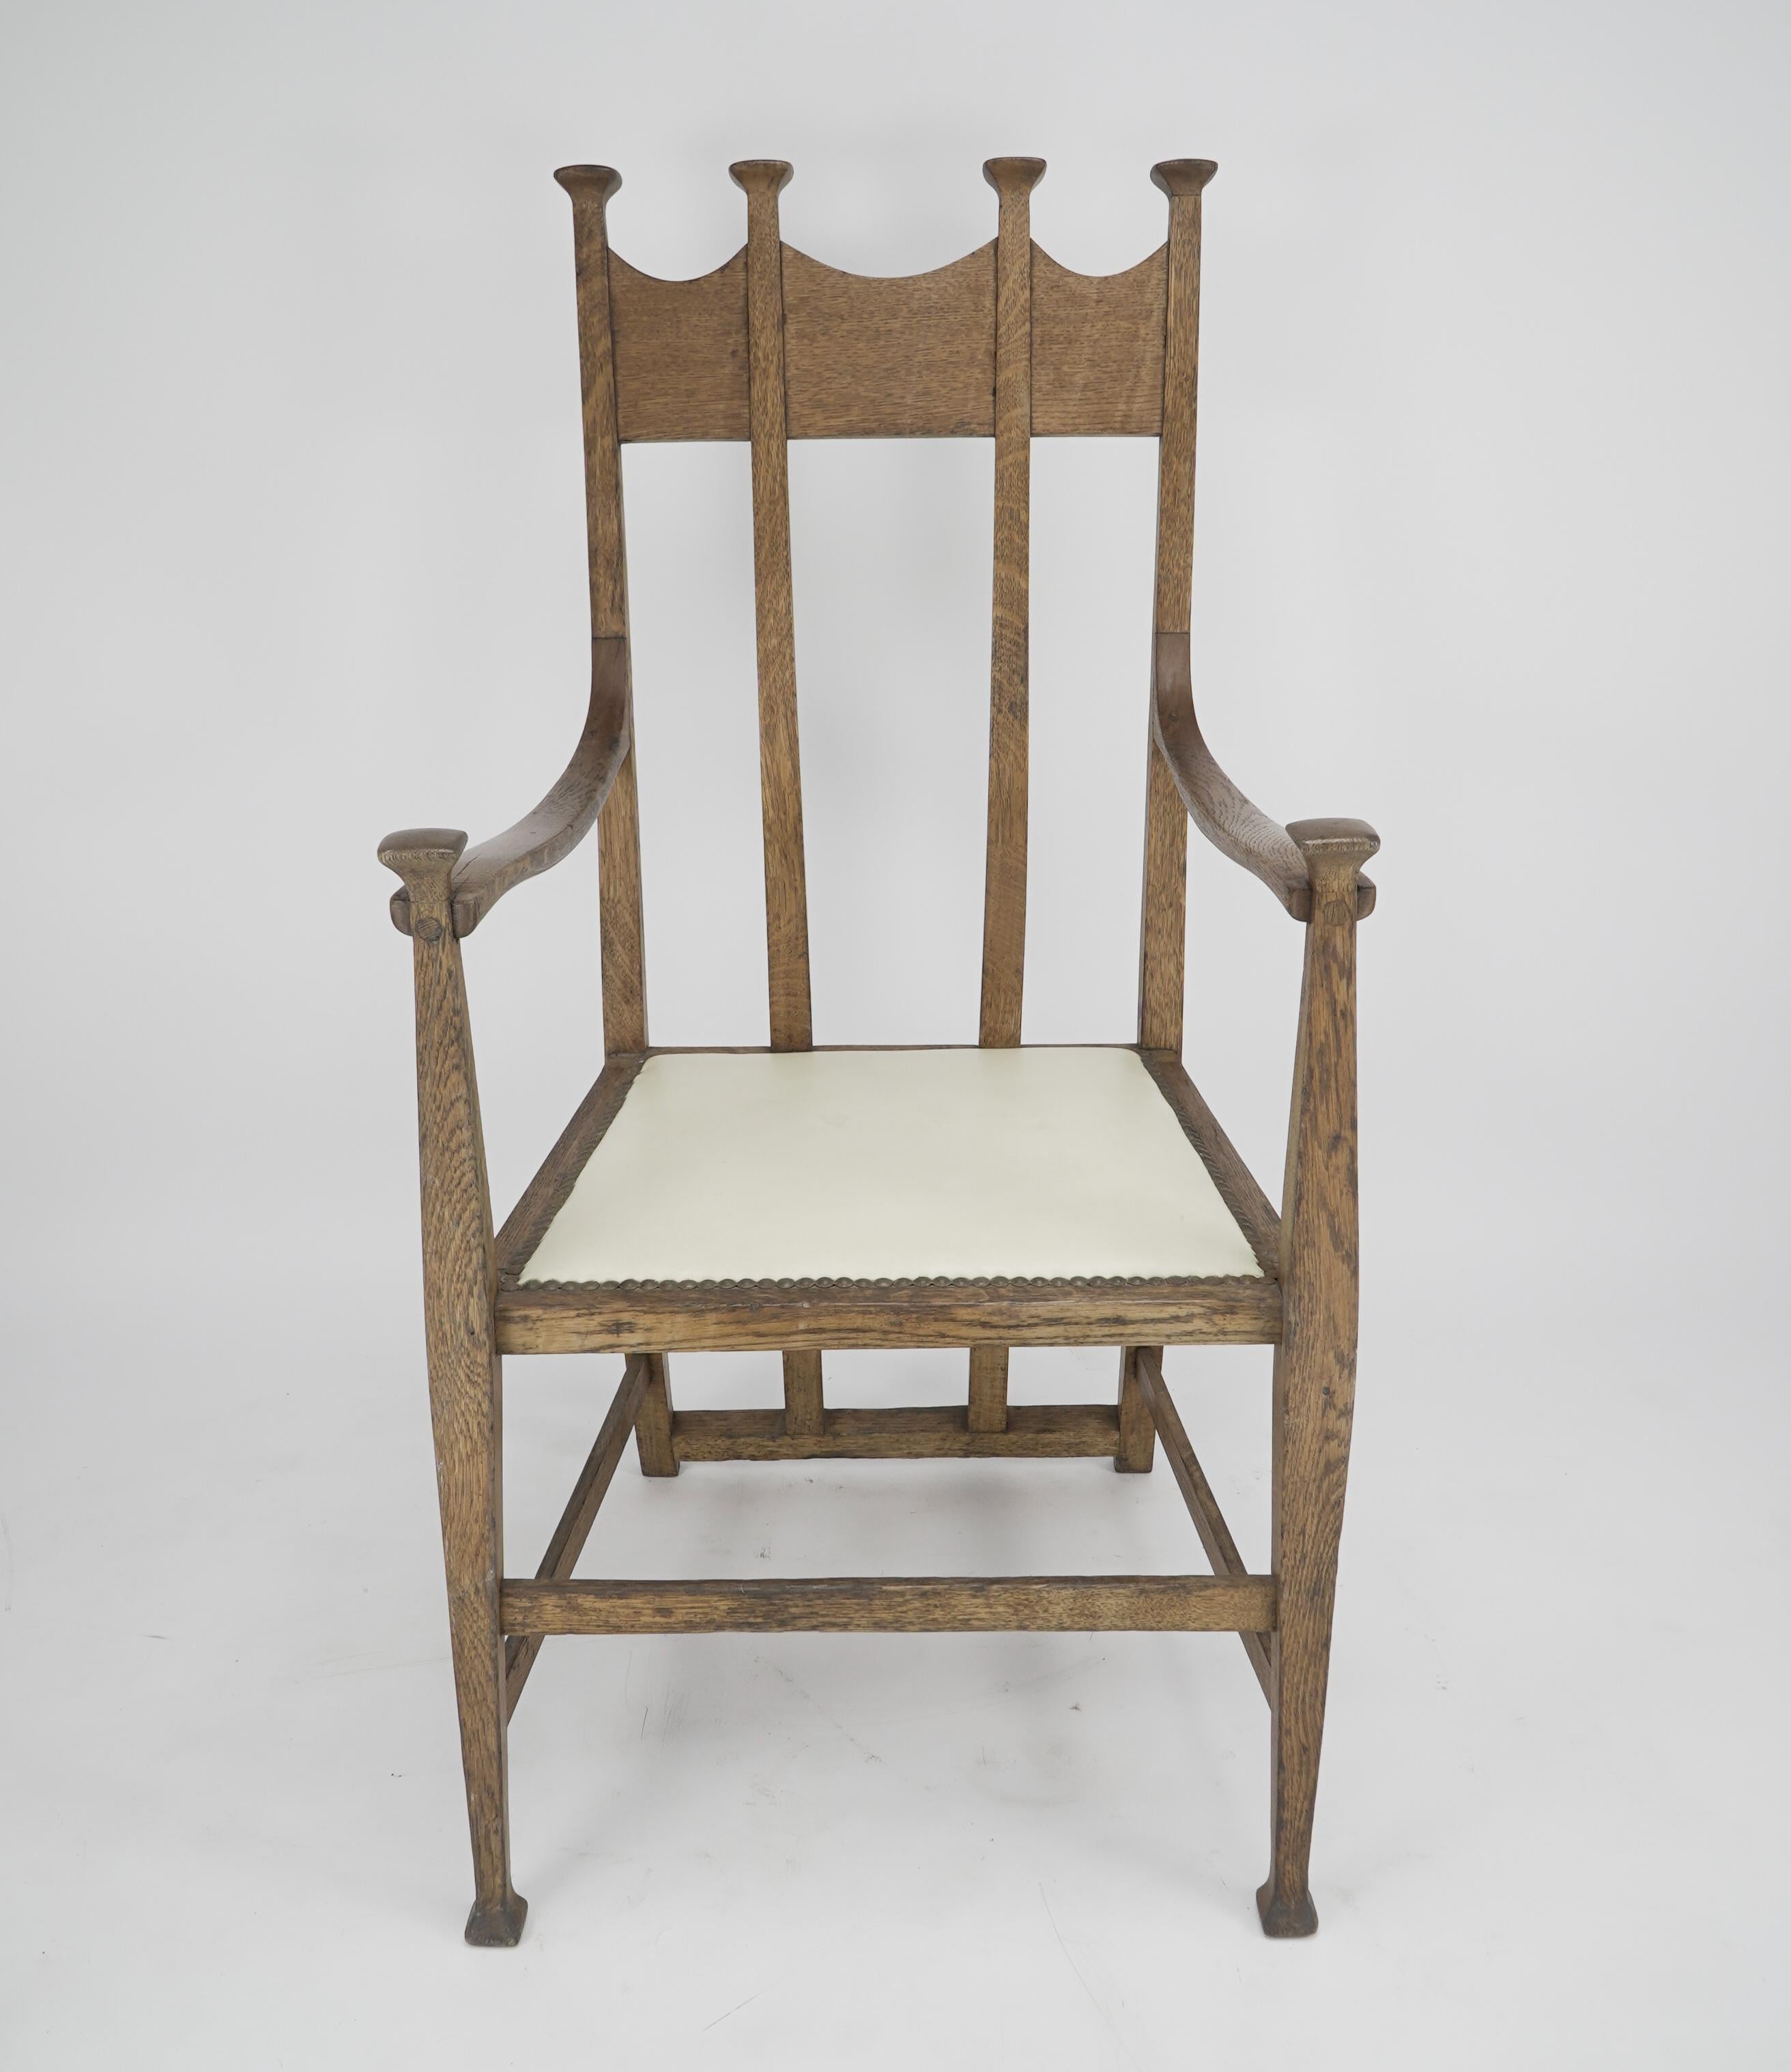 George Montague Ellwood. Fabriqué par J S Henry.
Fauteuil trône en chêne de style Arts & Crafts, avec des épis de faîtage et de magnifiques supports de dossier, sur des pieds carrés effilés.